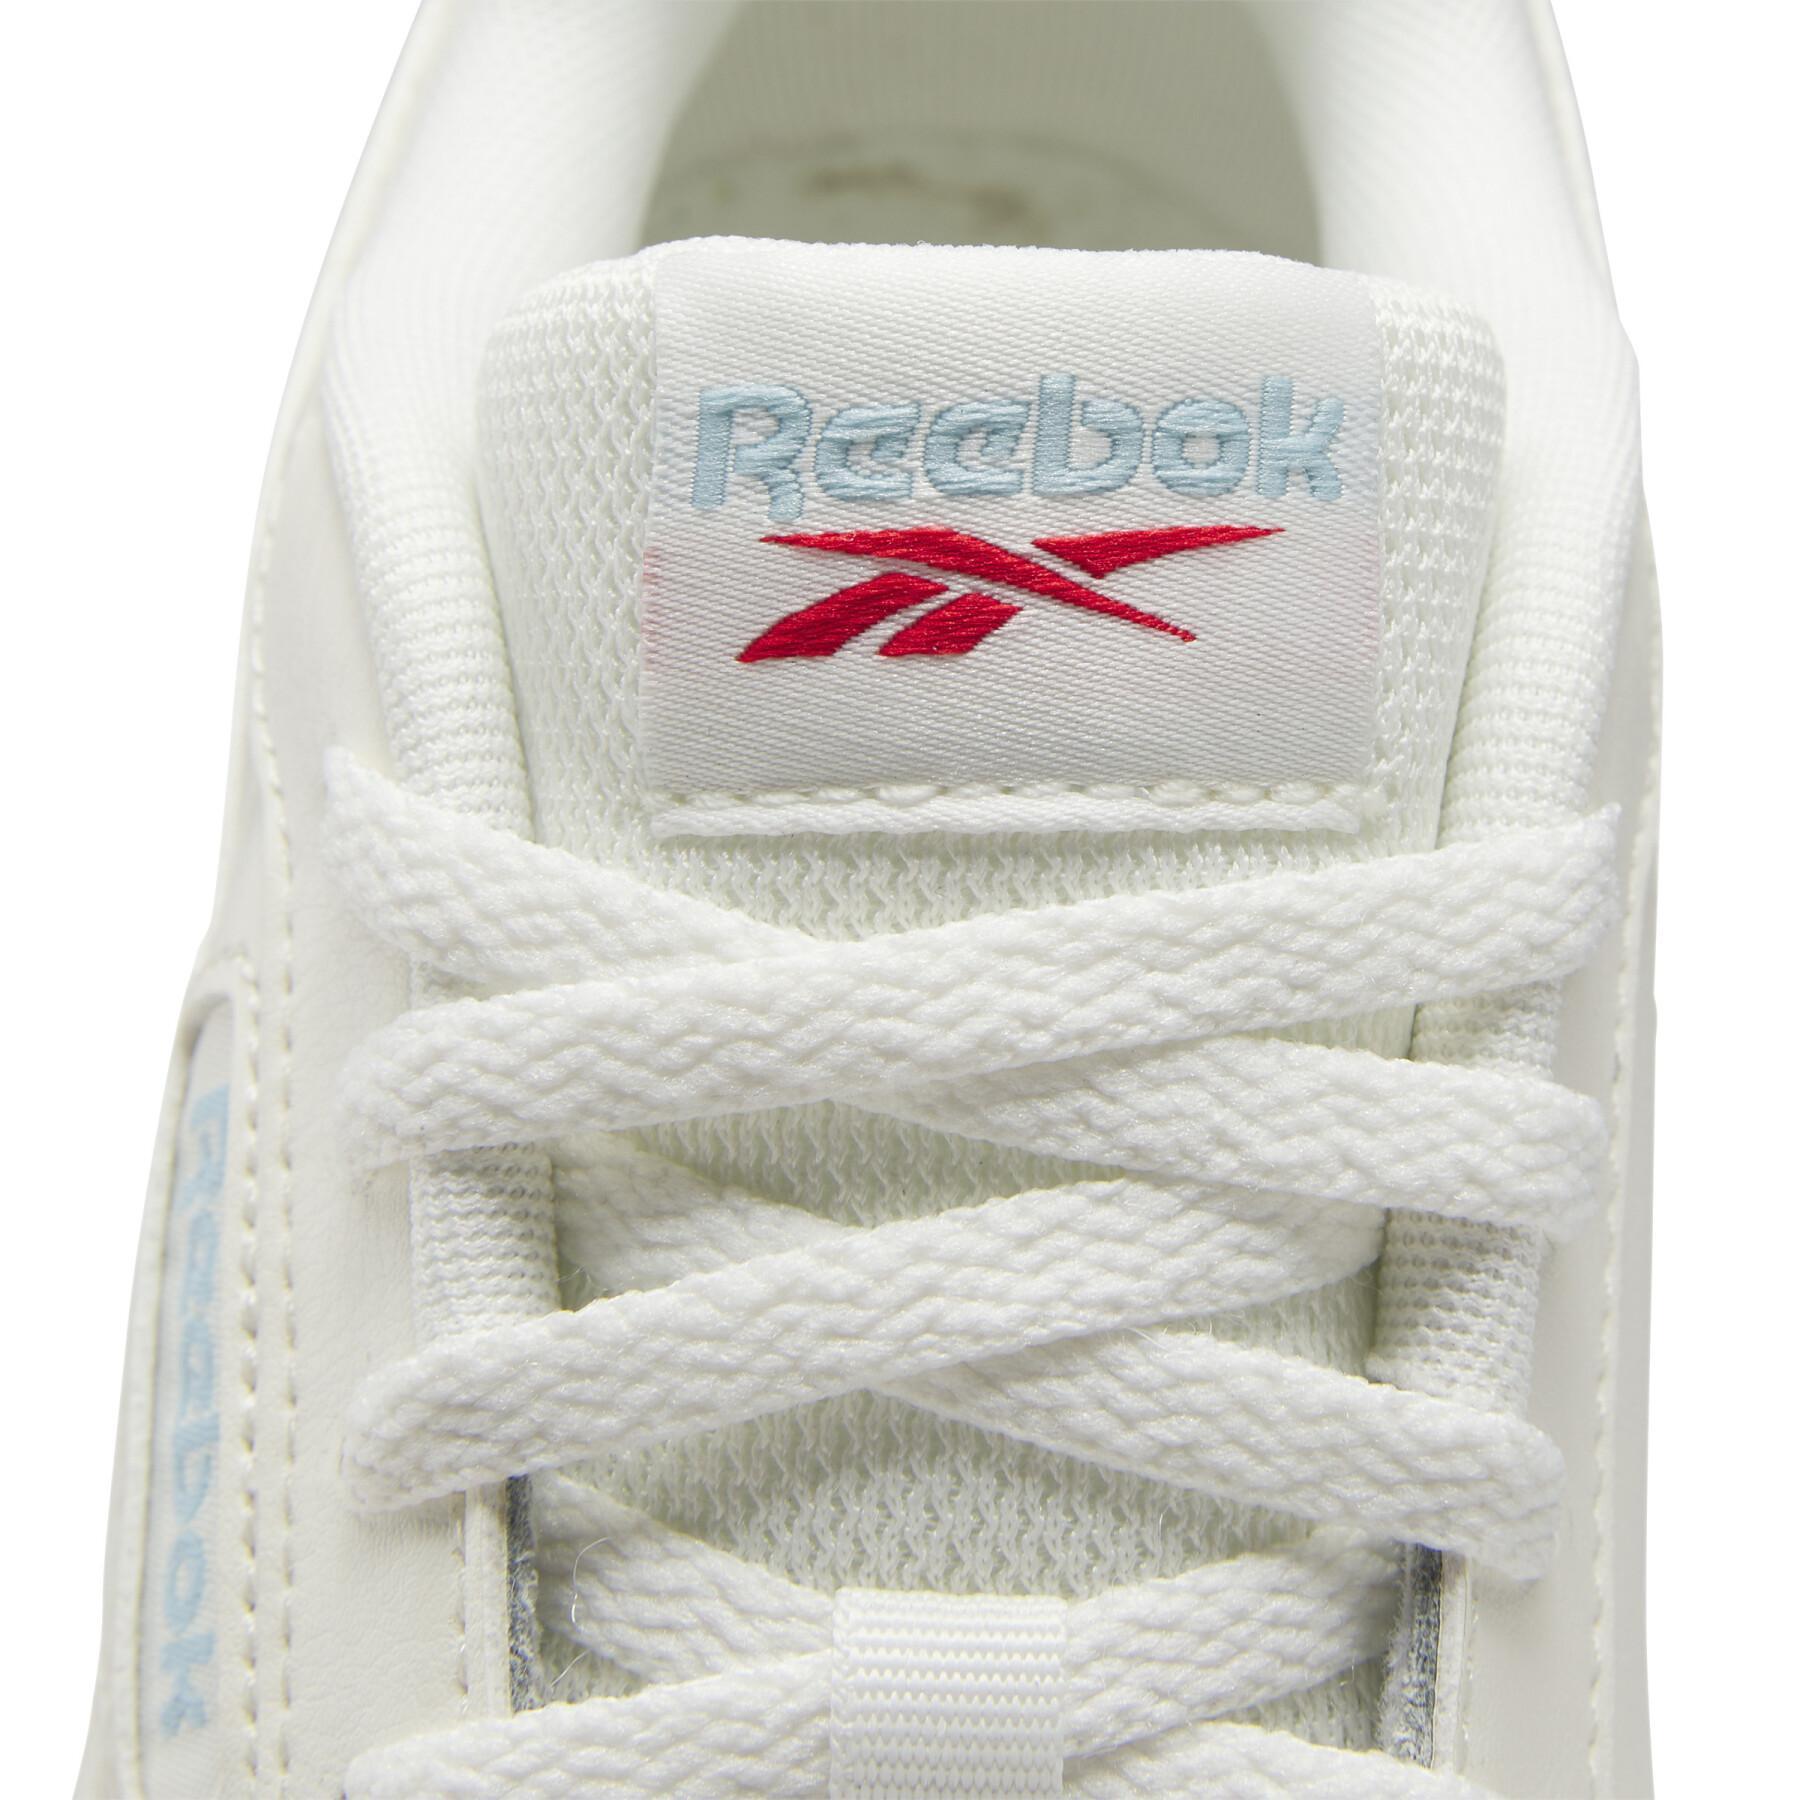 Zapatillas de deporte para mujer Reebok Glide